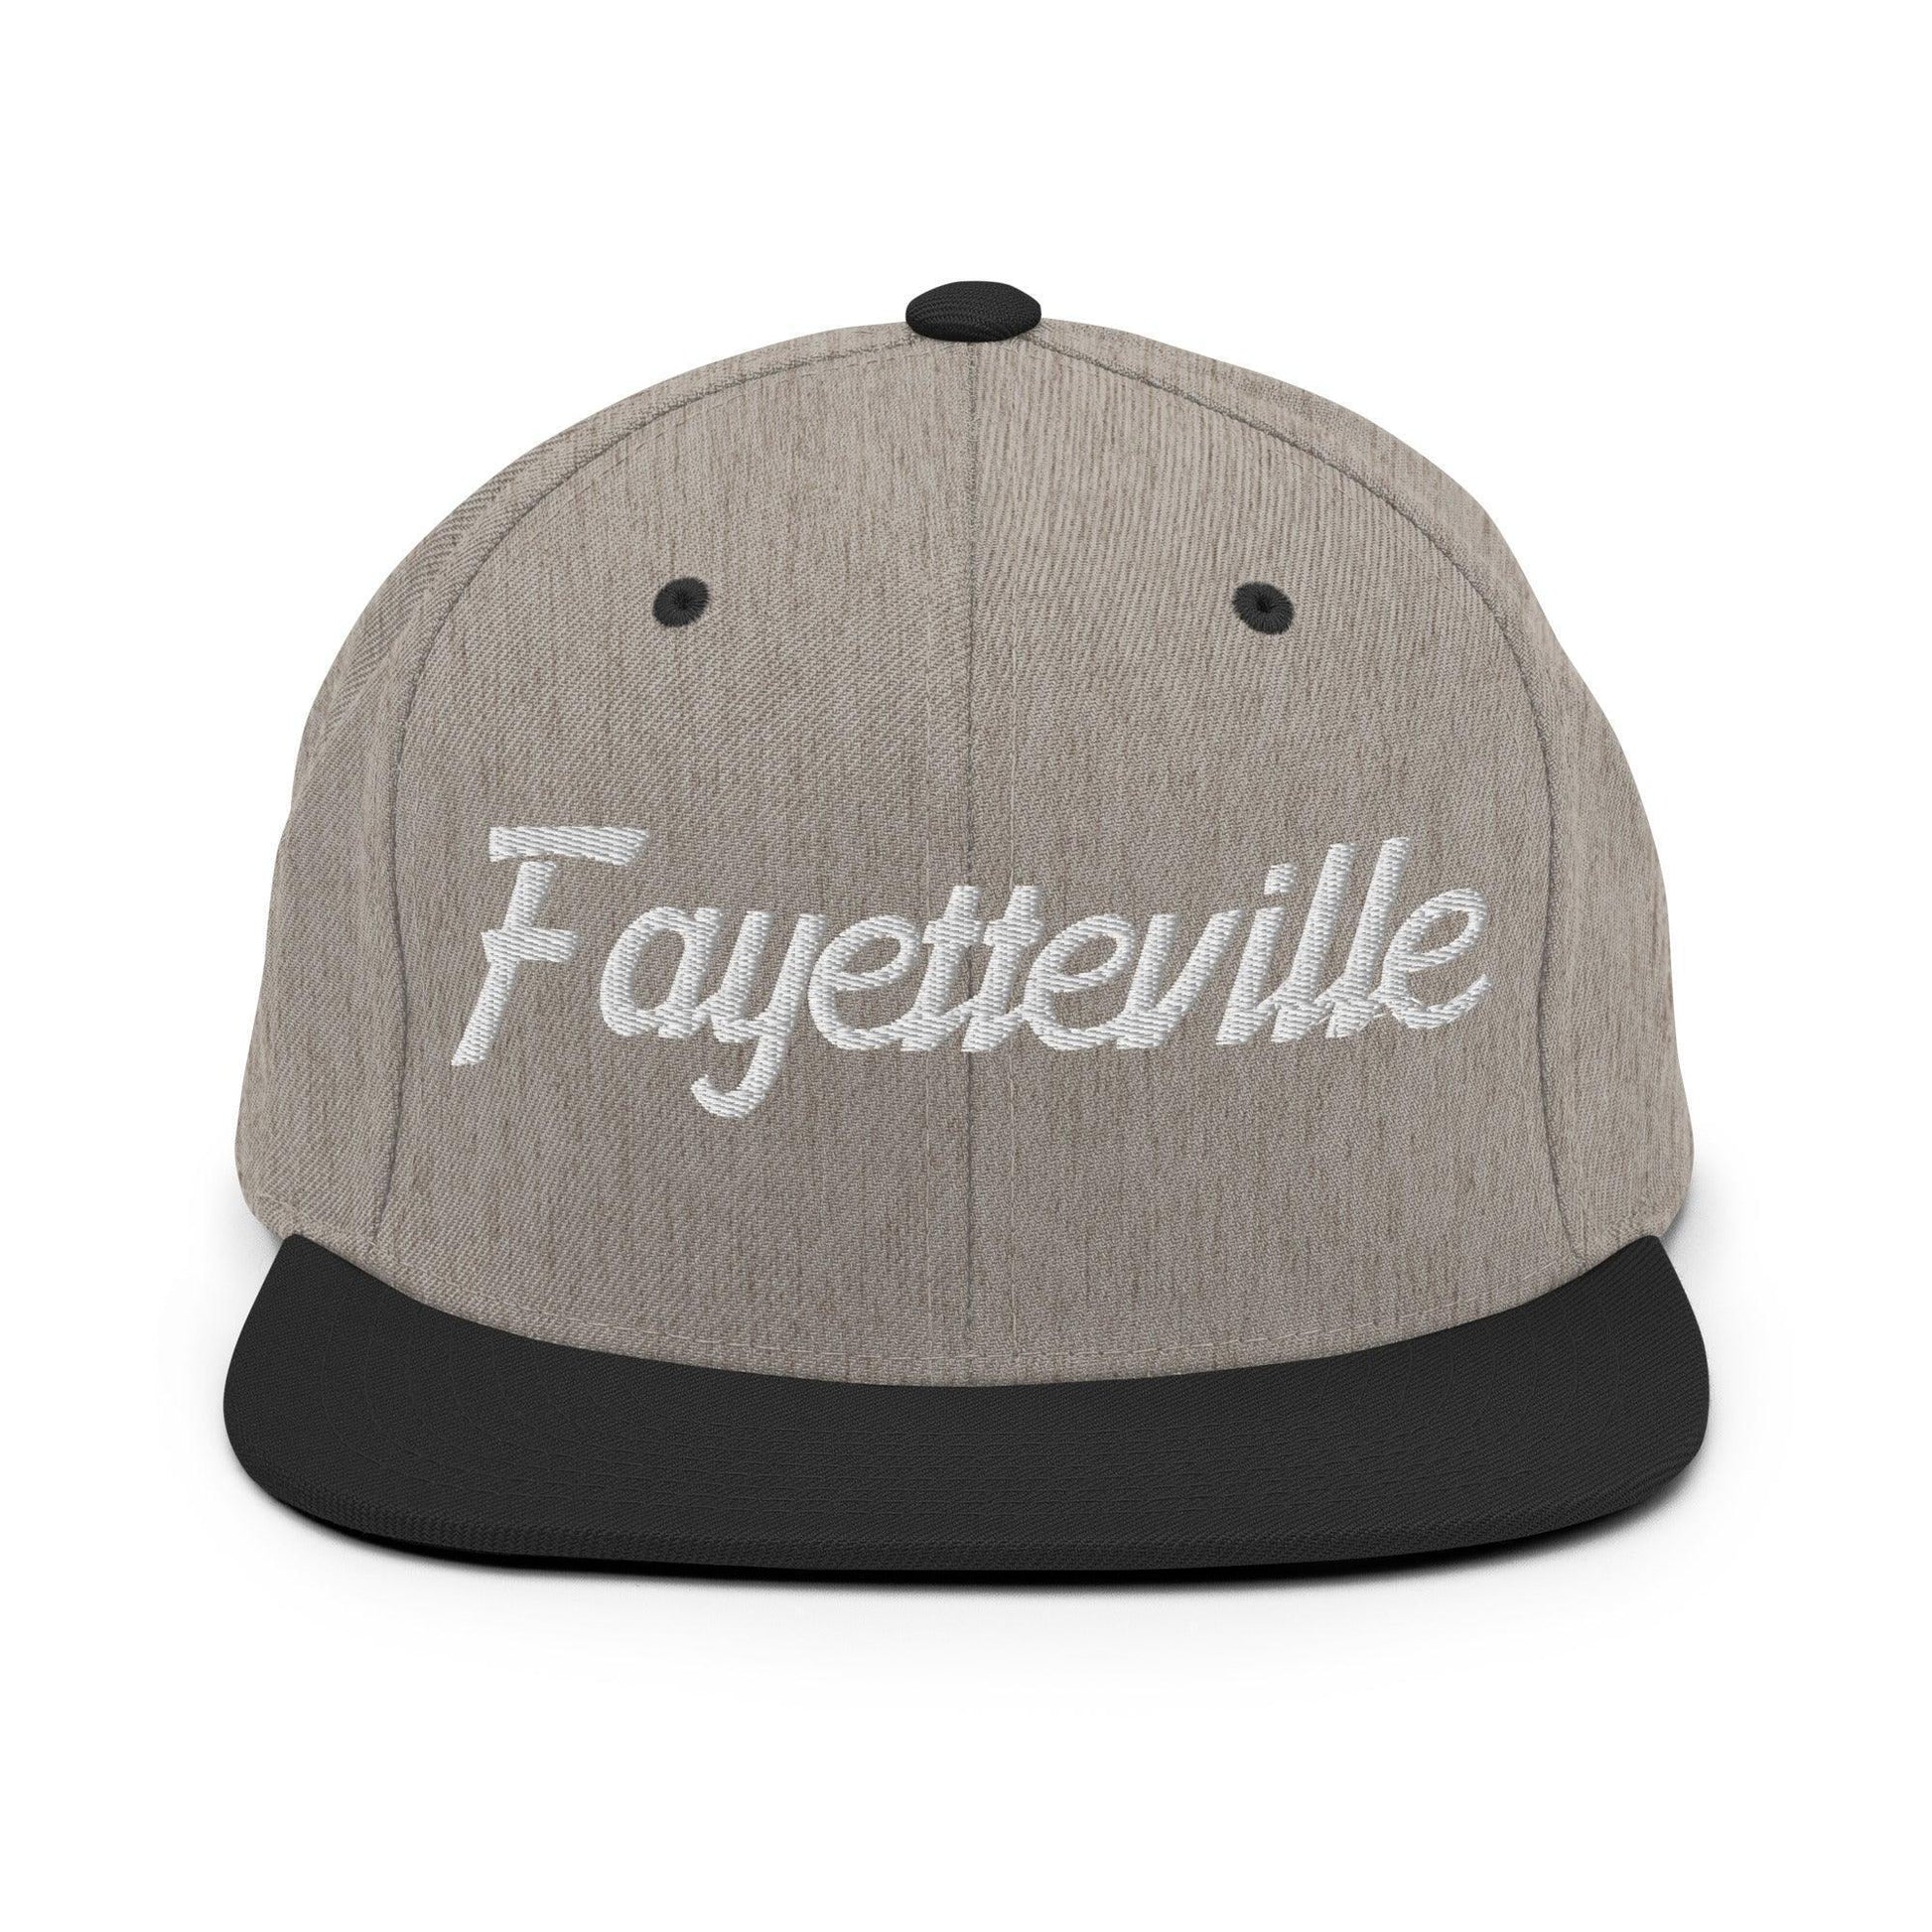 Fayetteville Script Snapback Hat Heather/Black